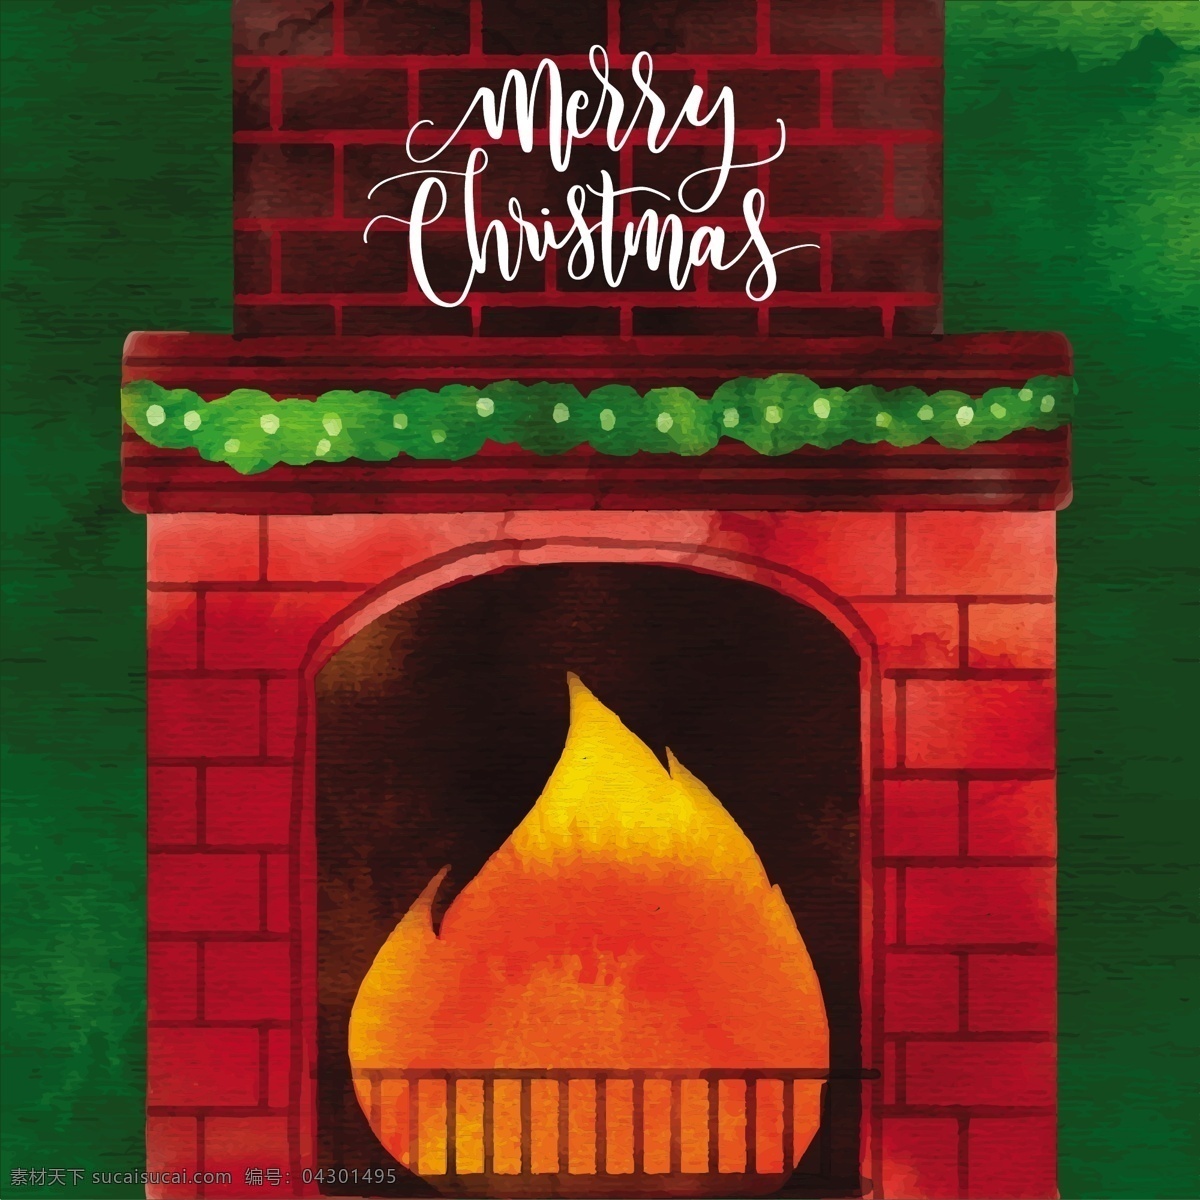 壁炉 圣诞 背景 节日 节日素材 圣诞背景 圣诞壁炉 圣诞节 圣诞素材 圣诞元素